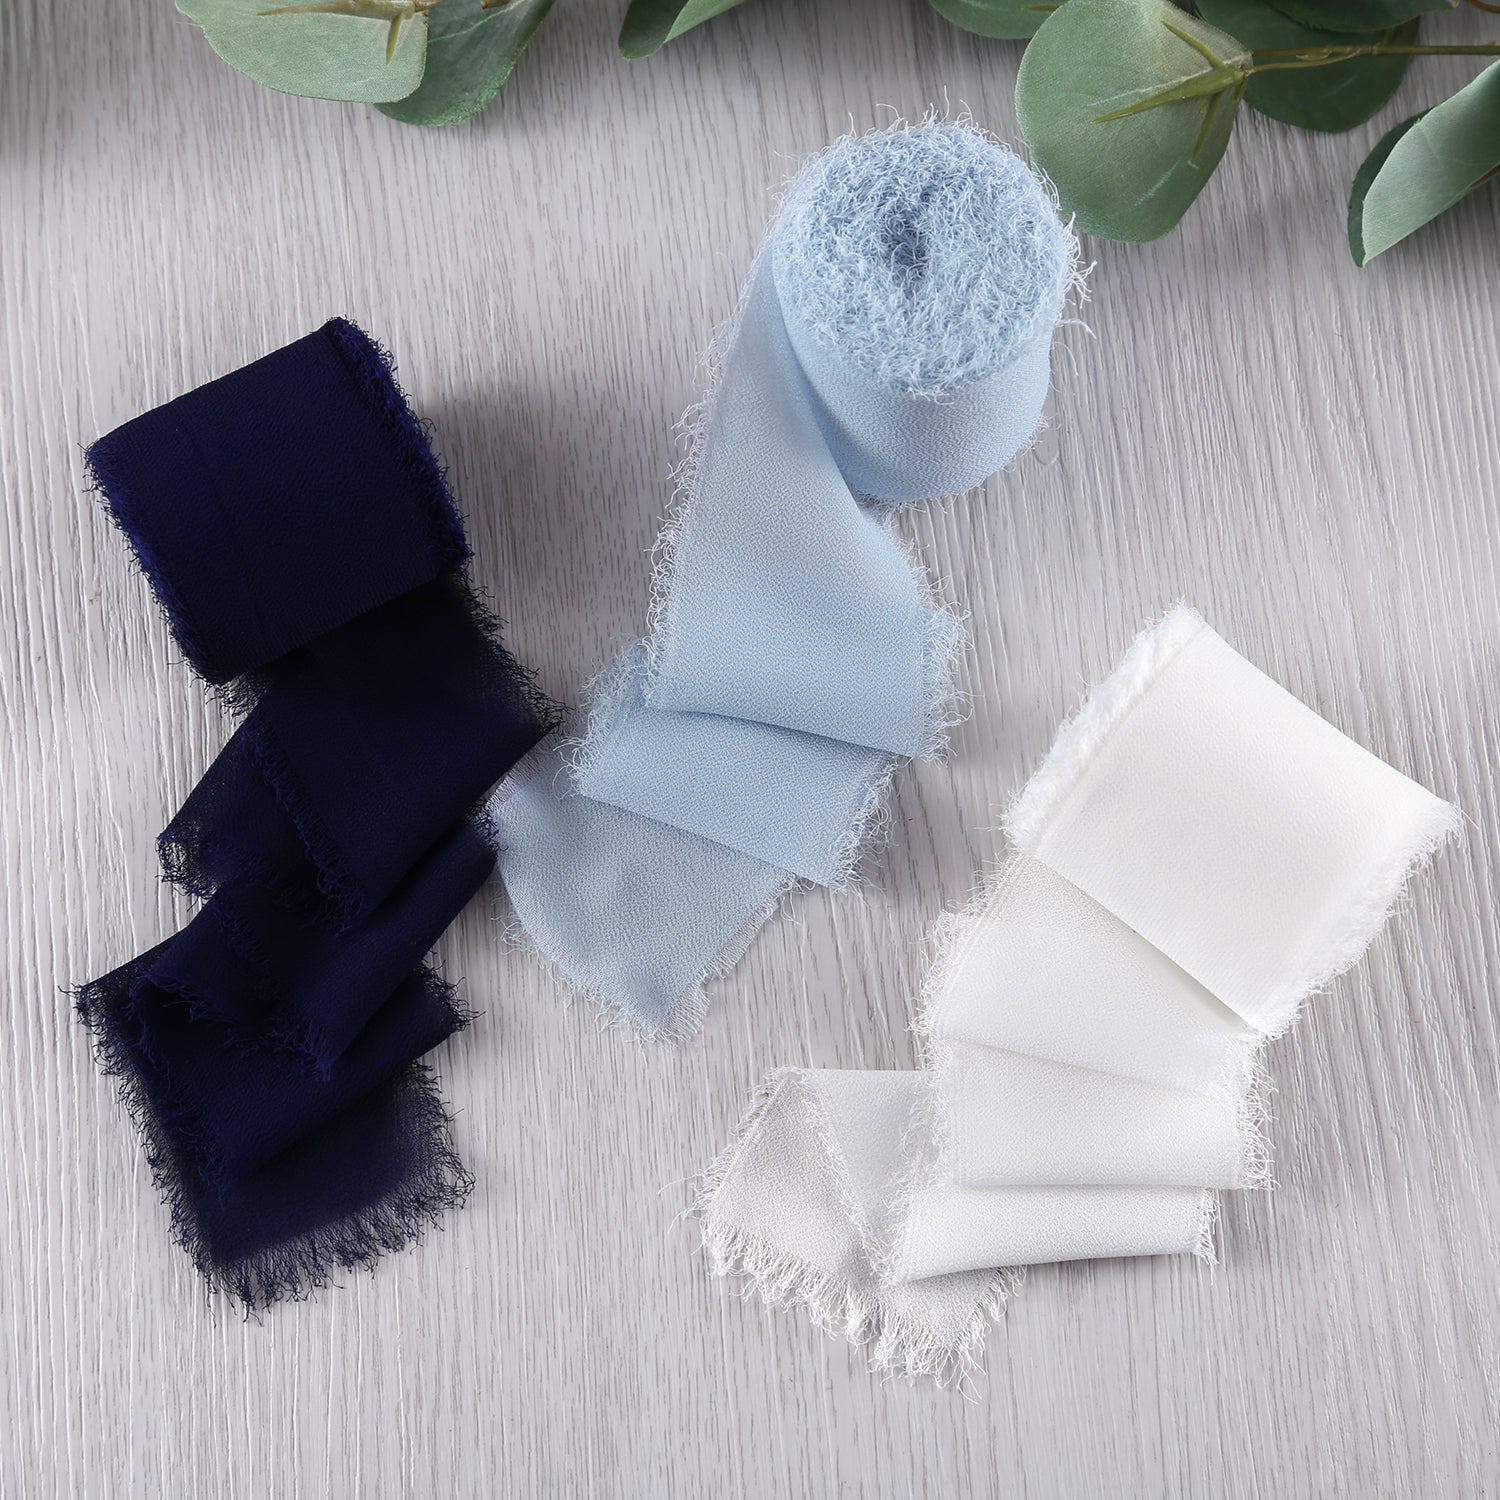  JEDIA Dusty Blue Ribbon, 3 Rolls Chiffon Silk Ribbons